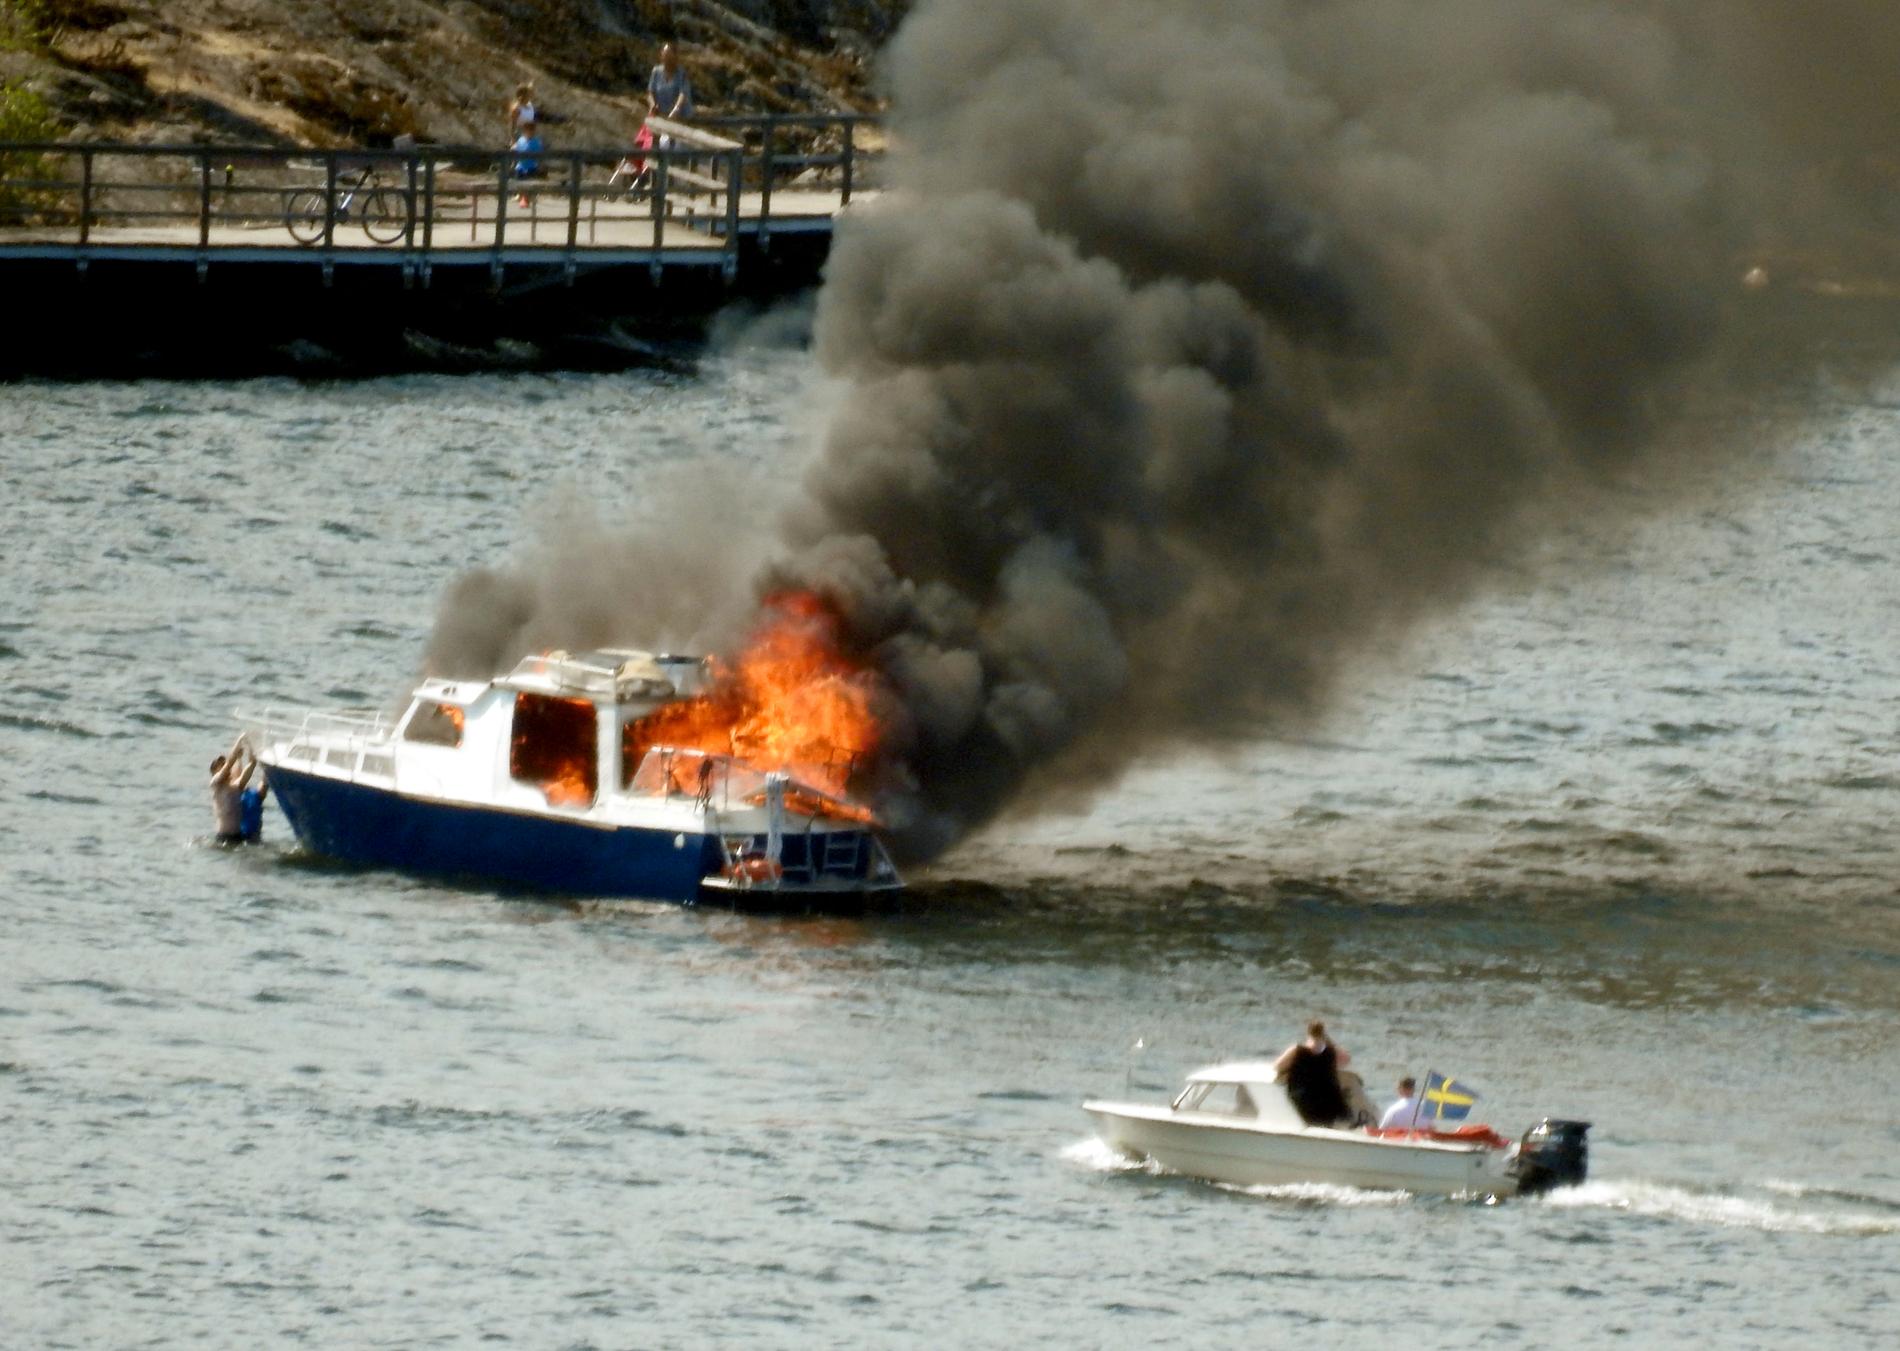 En fritidsbåt började brinna i vattnet mellan Långholmen och Stora Essingen i Stockholm i torsdags.